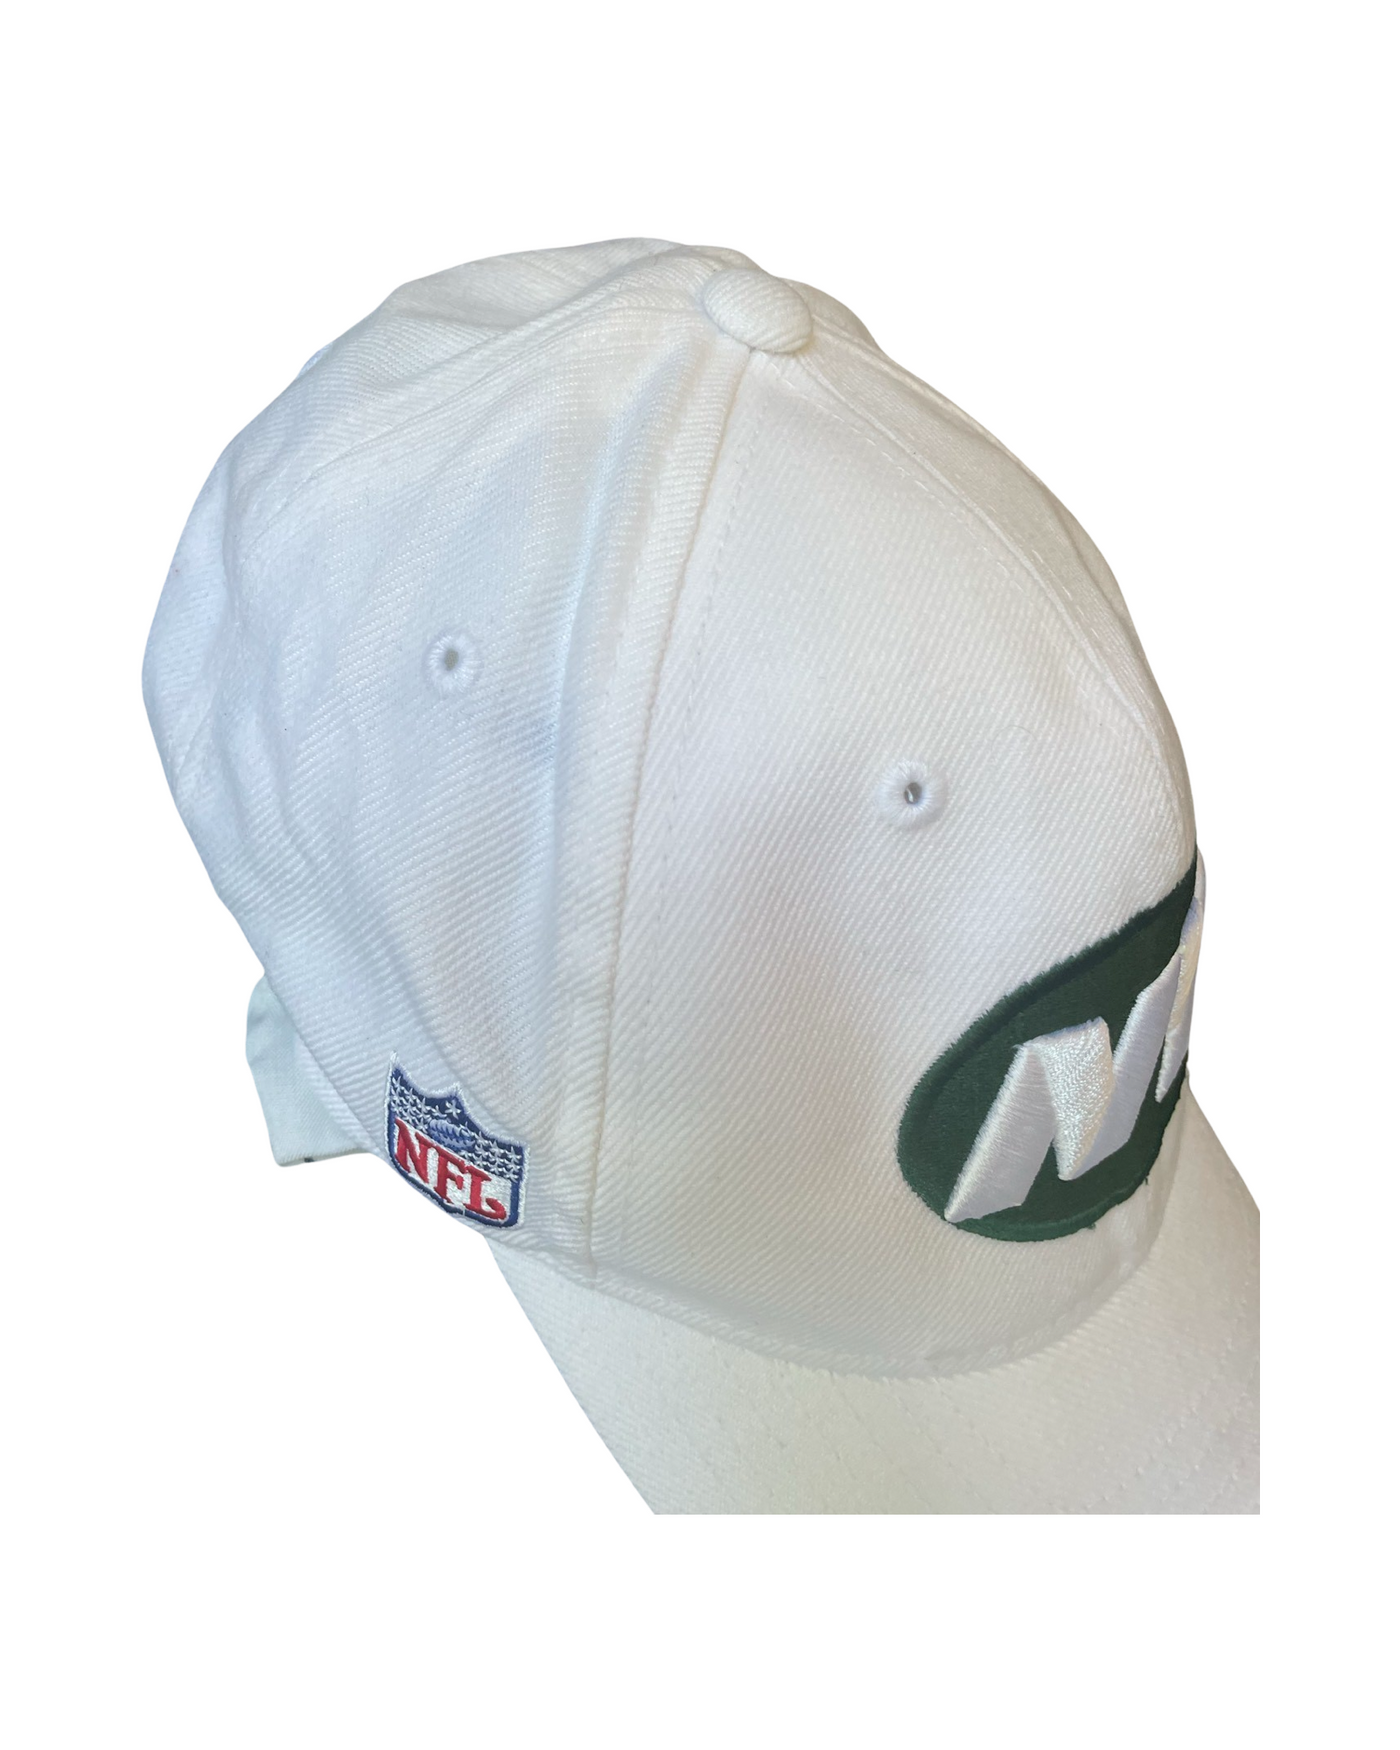 Vintage NFL New York Jets Cap